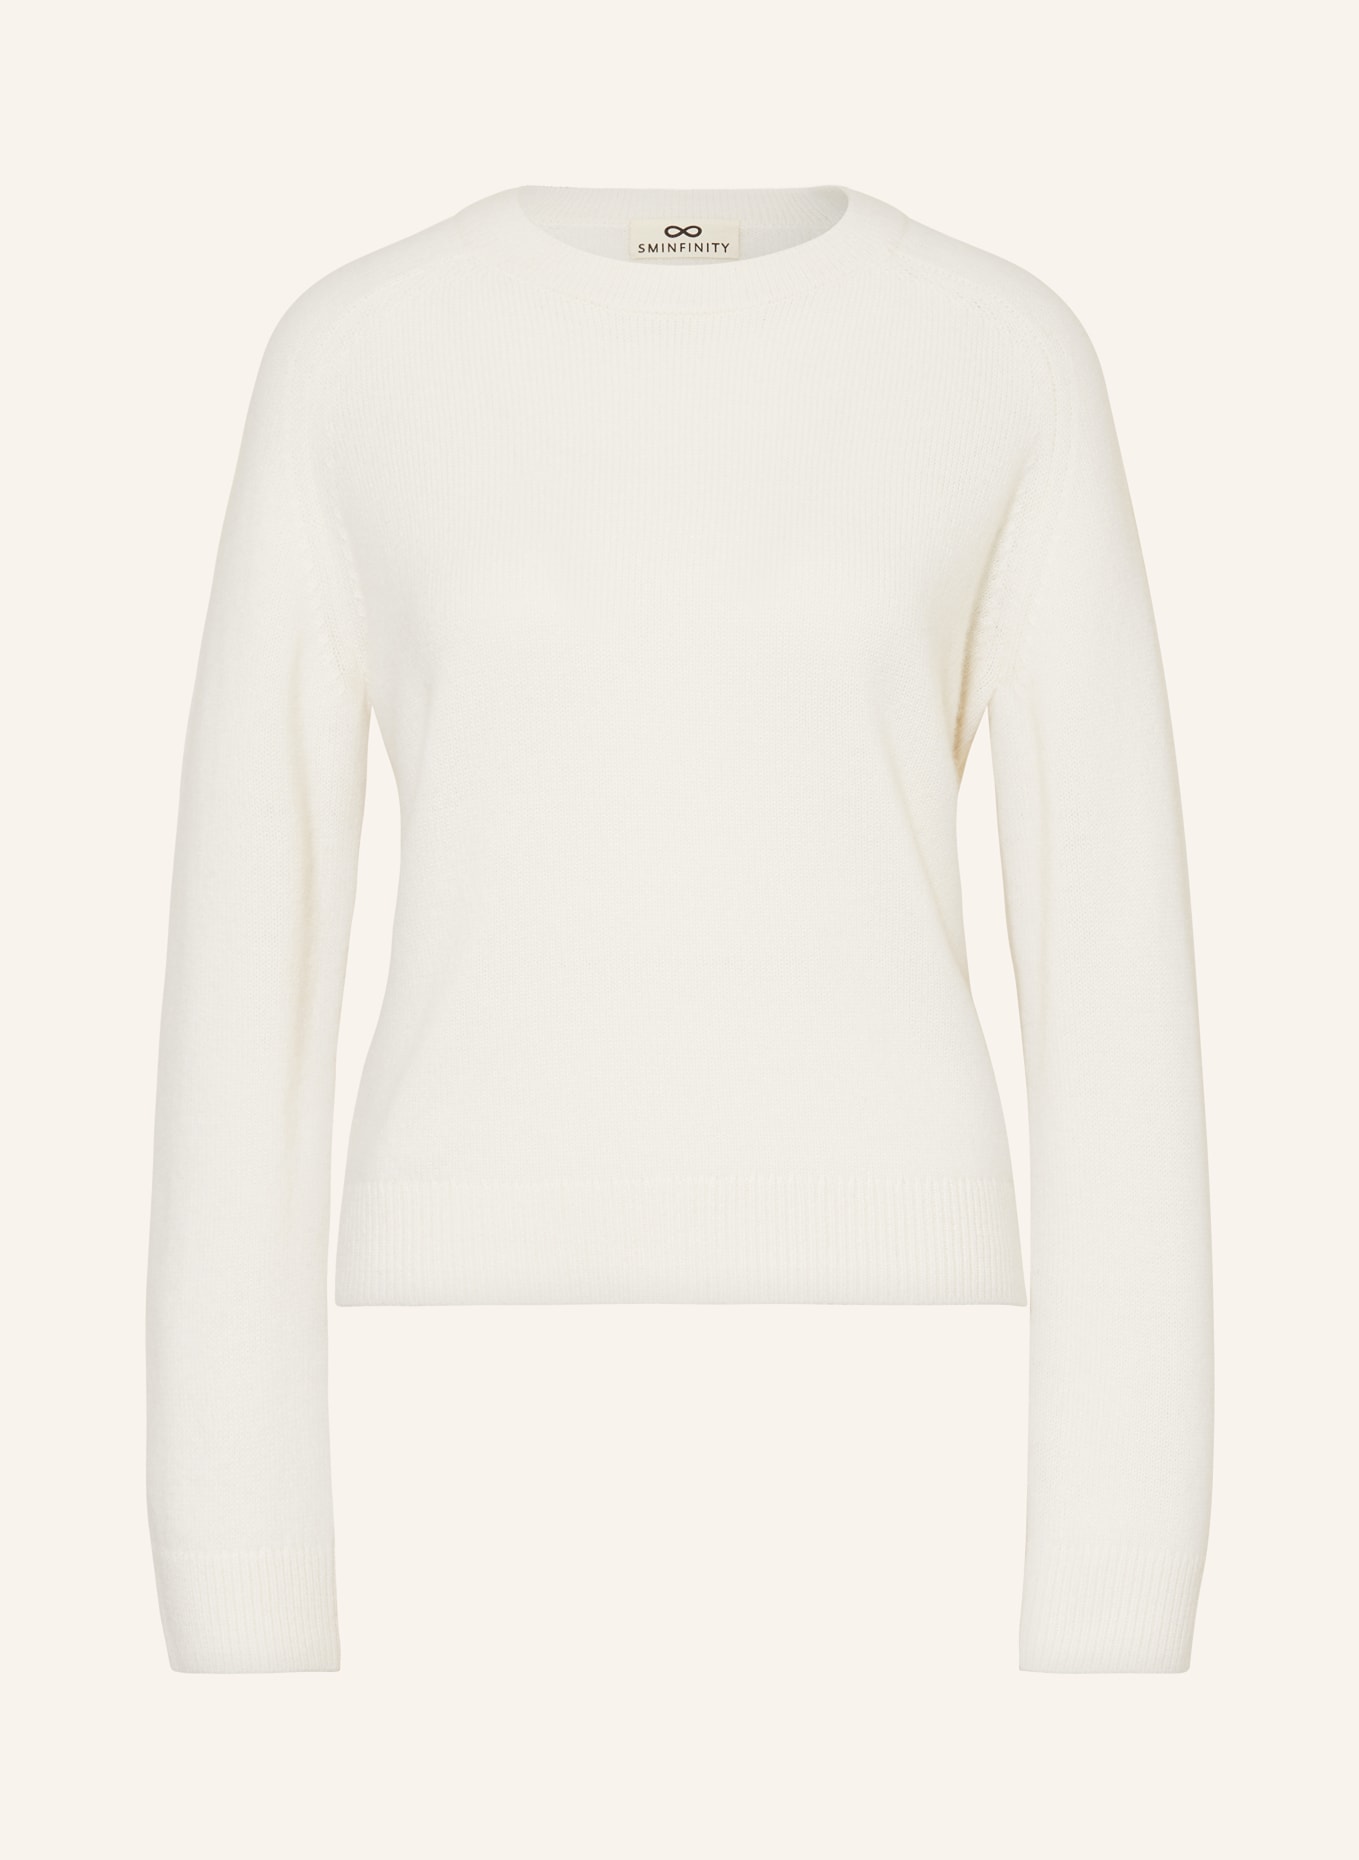 SMINFINITY Cashmere sweater, Color: ECRU (Image 1)